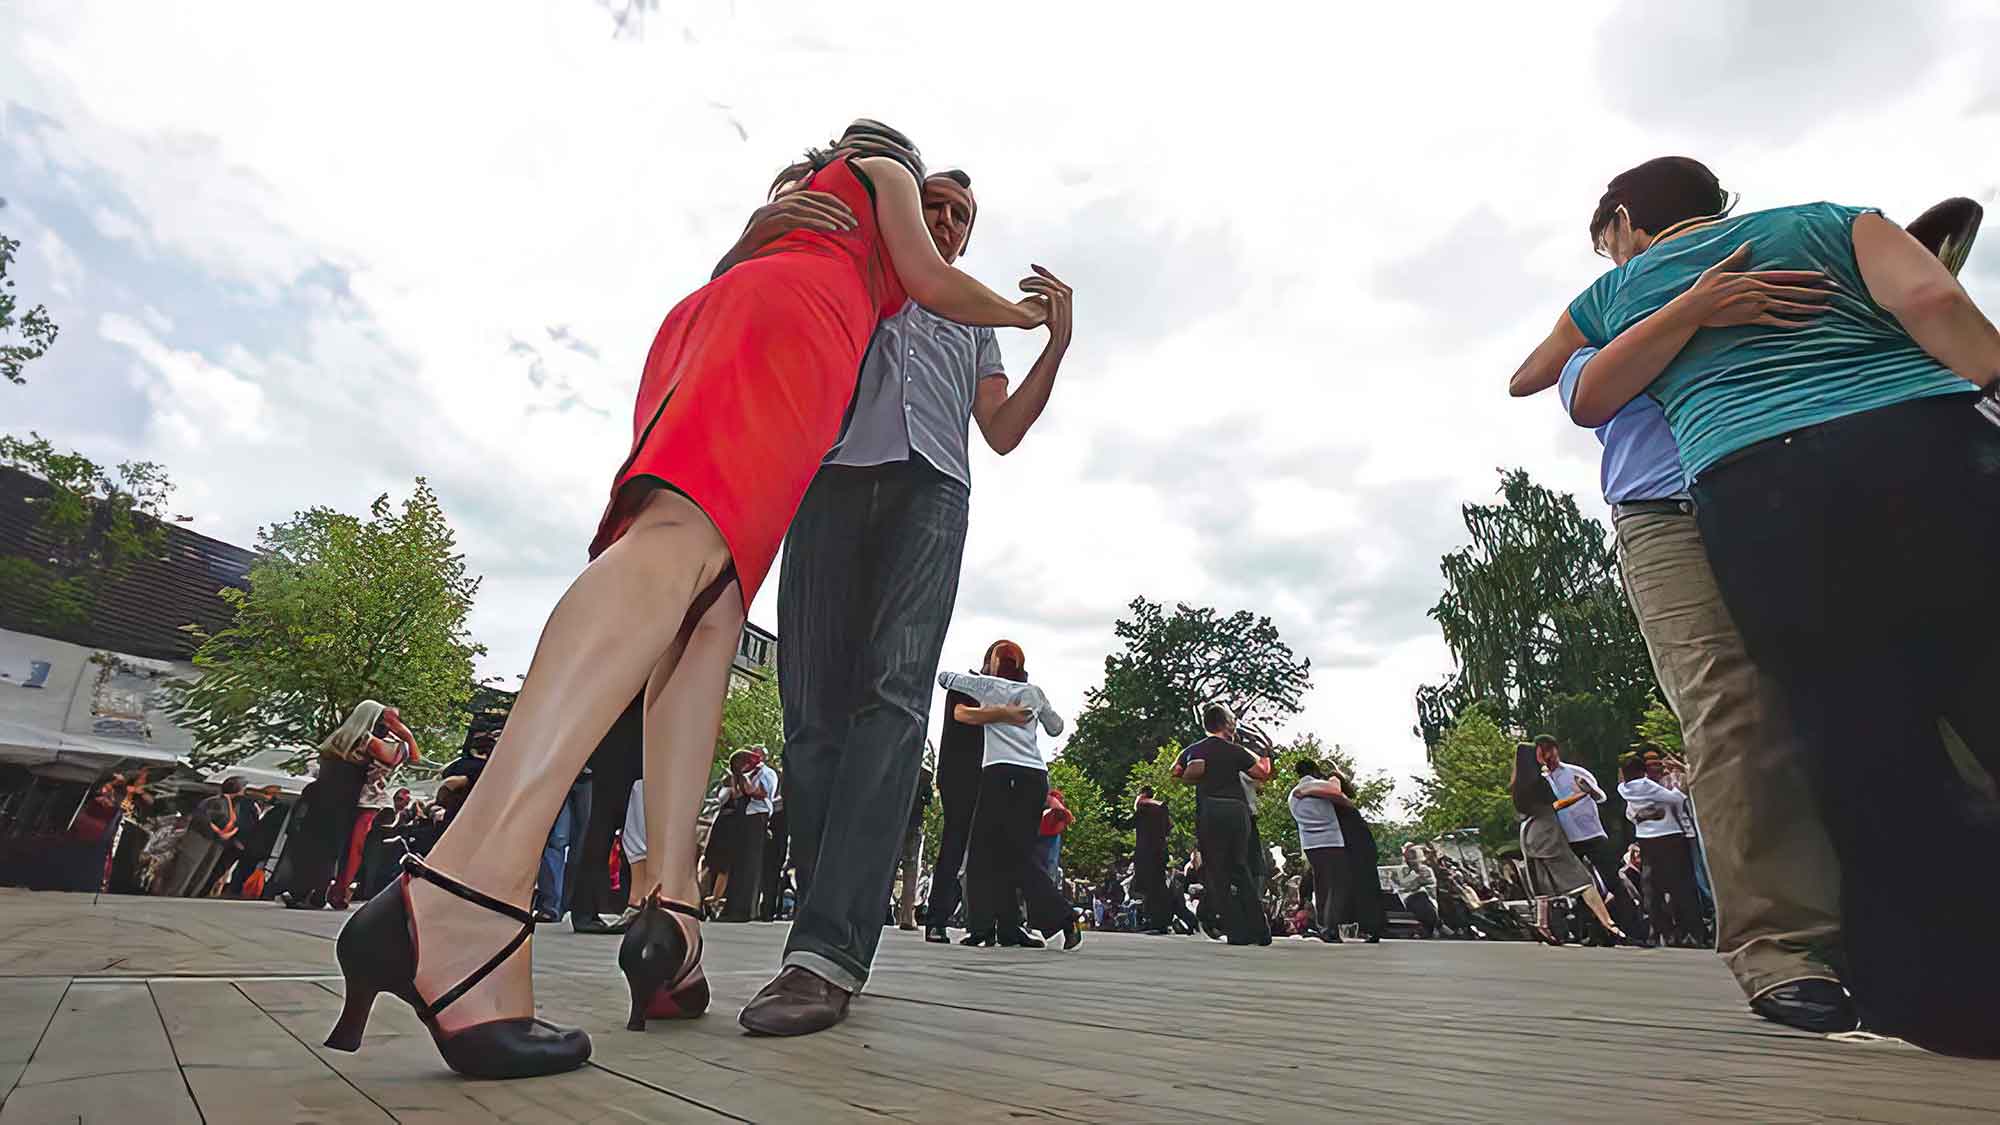 Tangofestival Gütersloh 2014, Volkshochschule, Stadthalle, Dreiecksplatz, 6. bis 8. Juni 2014